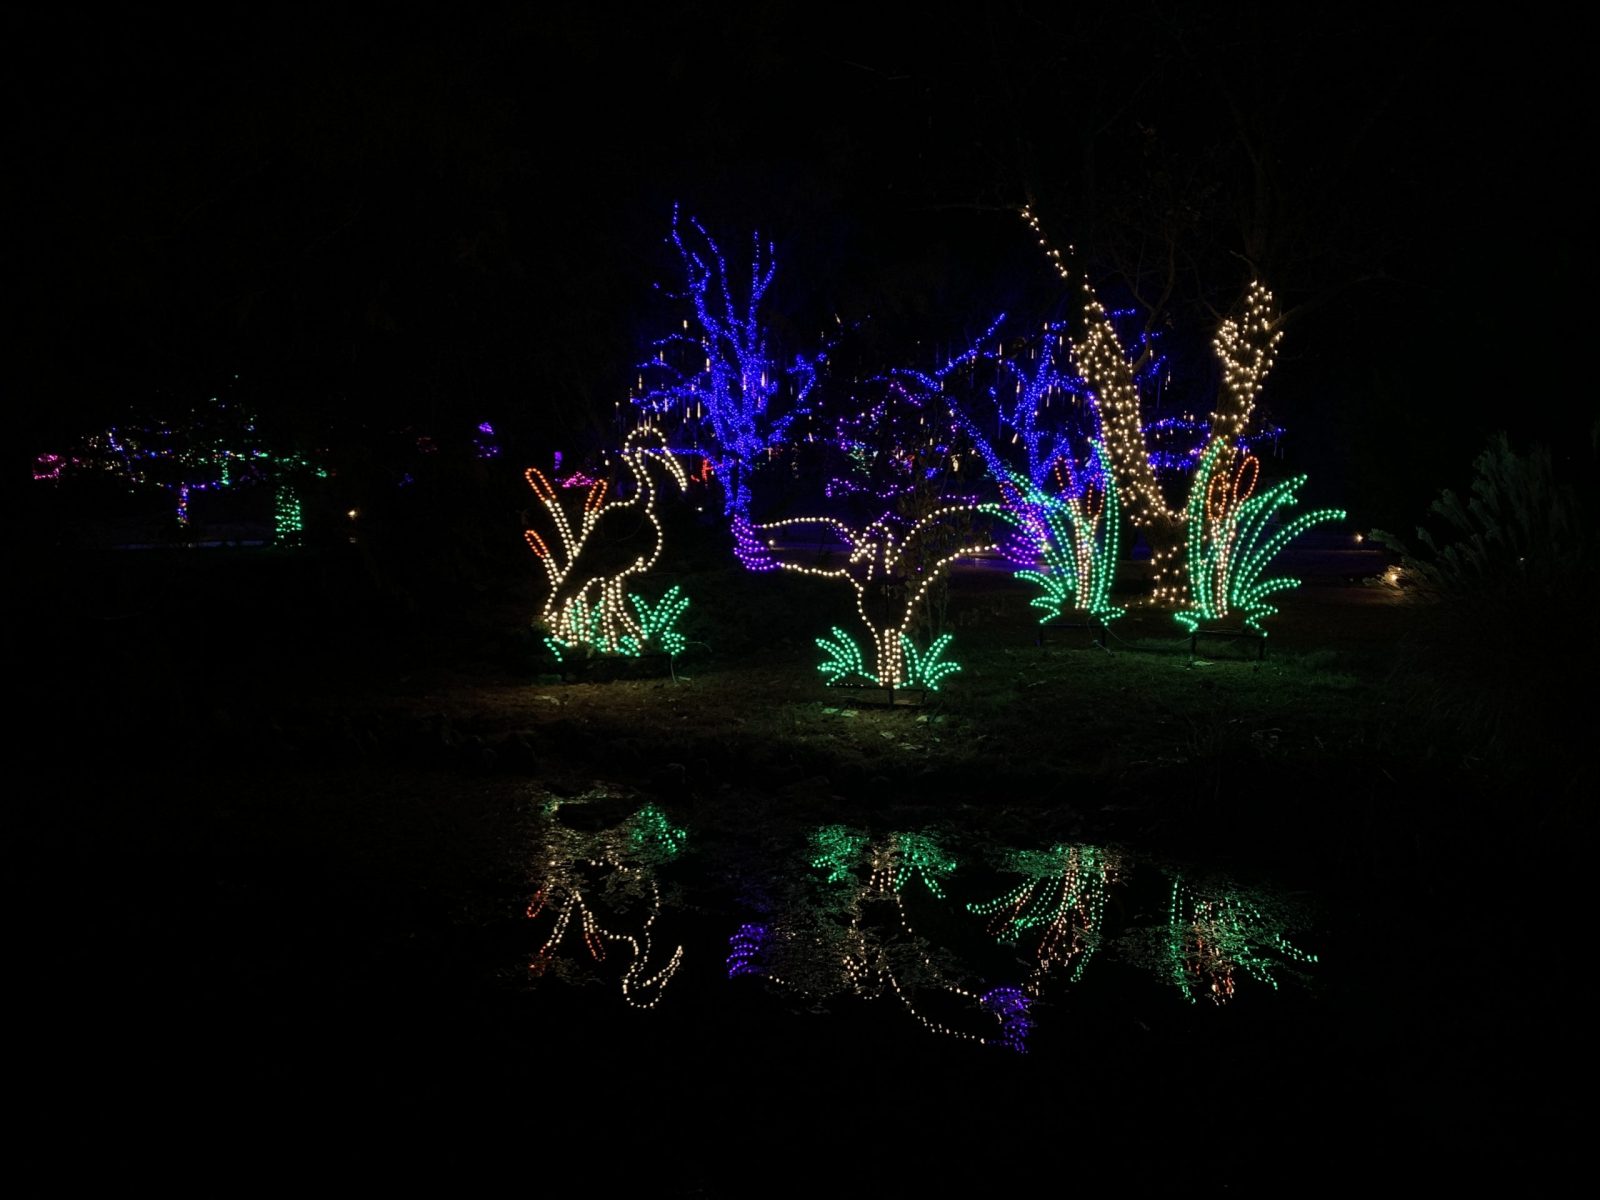 Gardens Aglow decorates Mizumoto Japanese Stroll Garden in 175,000 lights